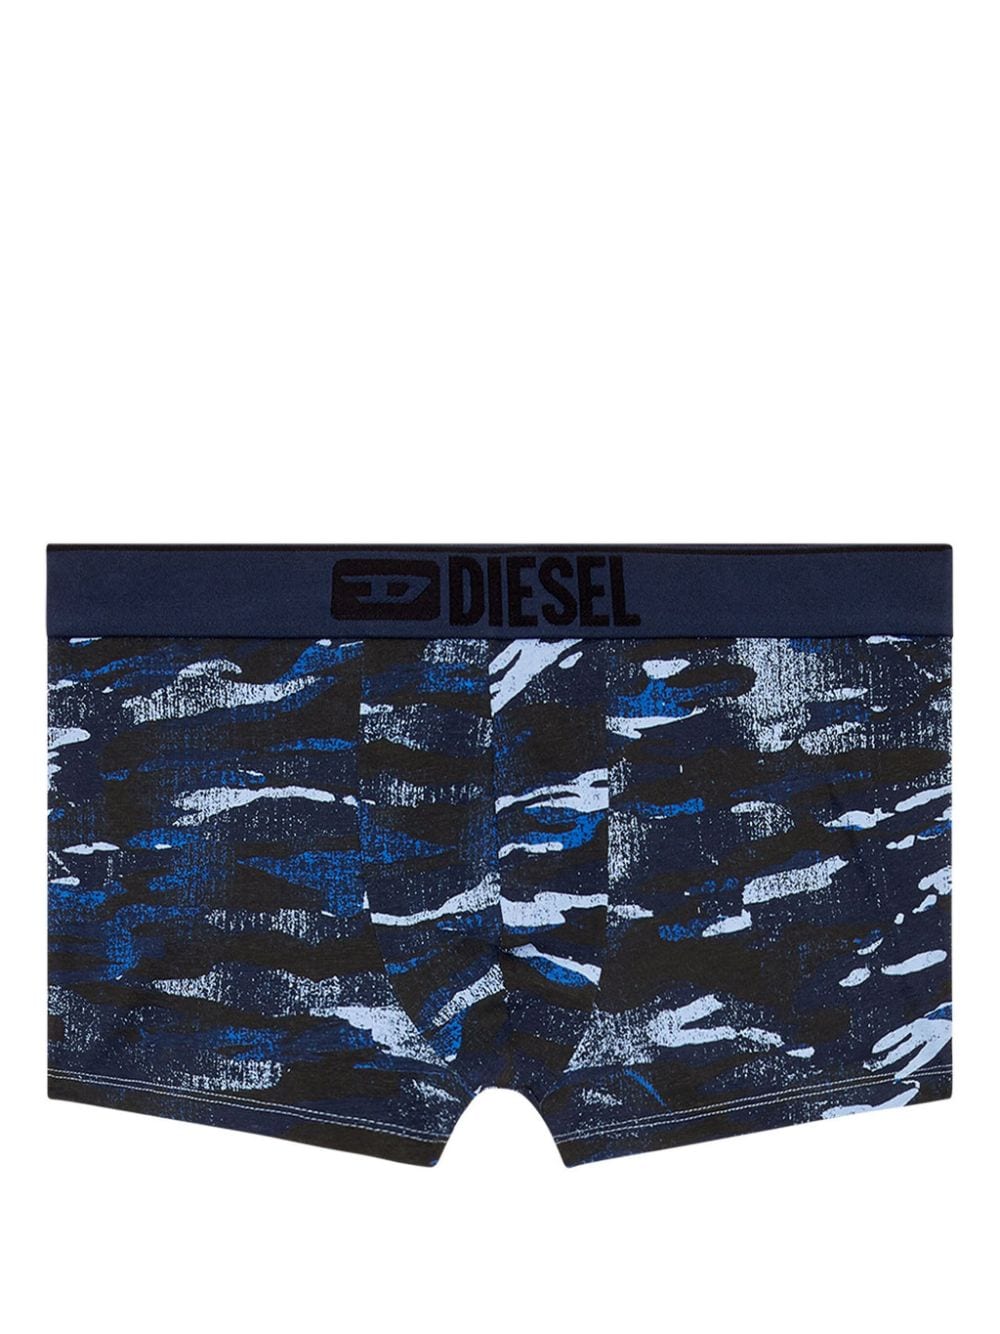 Diesel Damien camouflage-print boxers - Blau